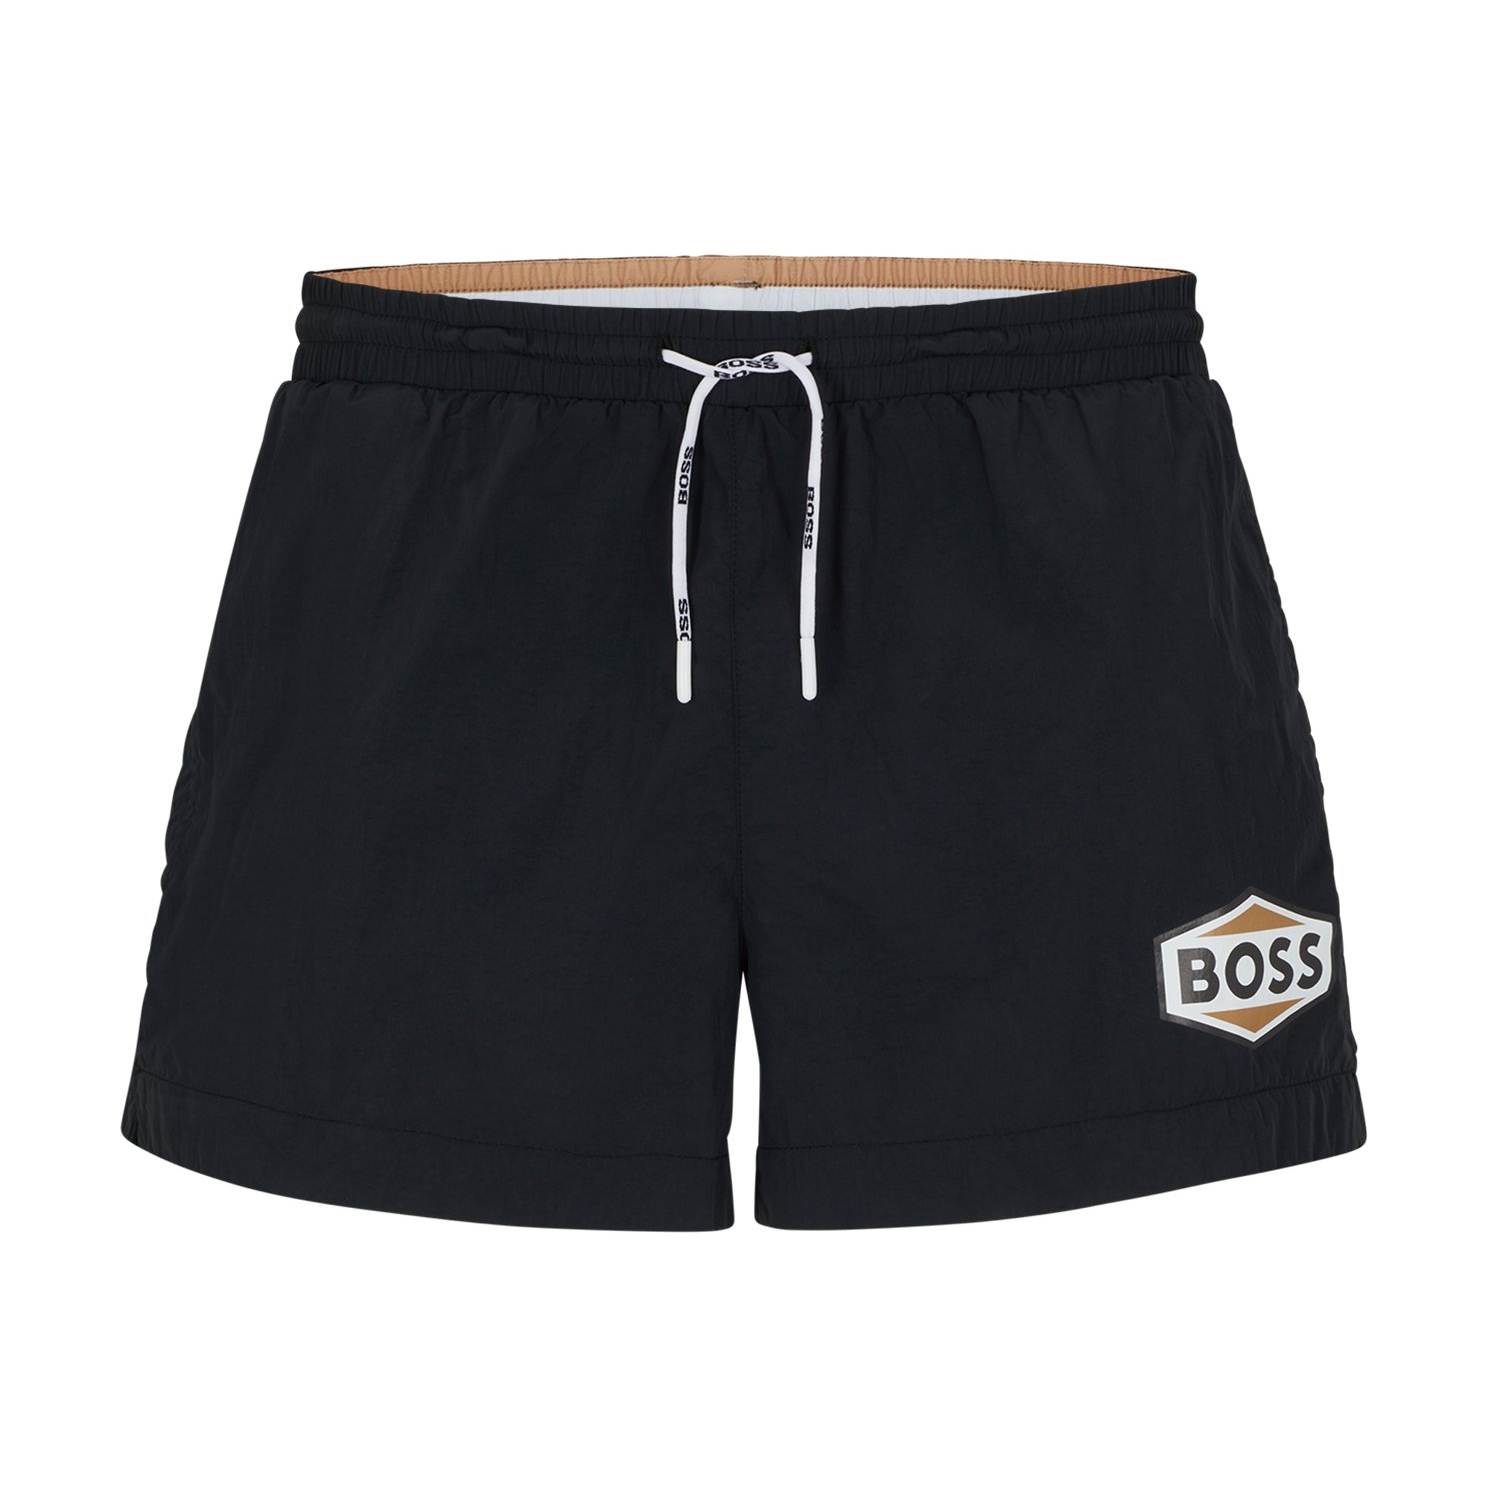 Купальные шорты Hugo Boss Quick-drying With Logo Details, черный купальные шорты hugo boss with repeat logos темно серый